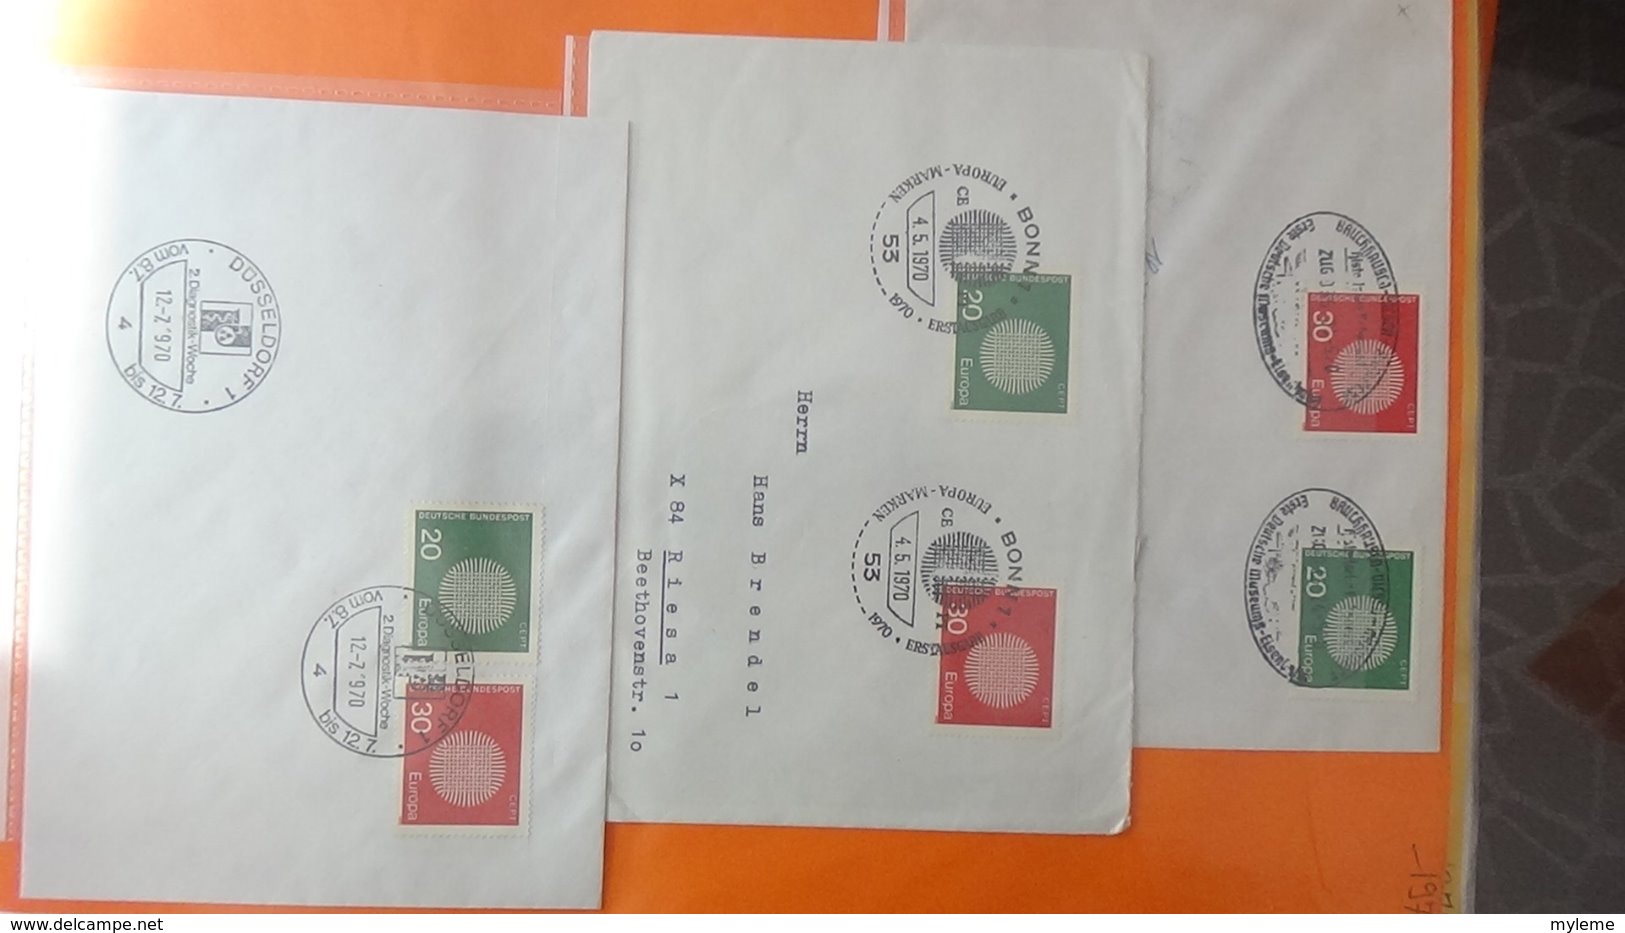 Dispersion d'une collection d'enveloppe 1er jour et autres dont 181 EUROPA d'ALLEMAGNE